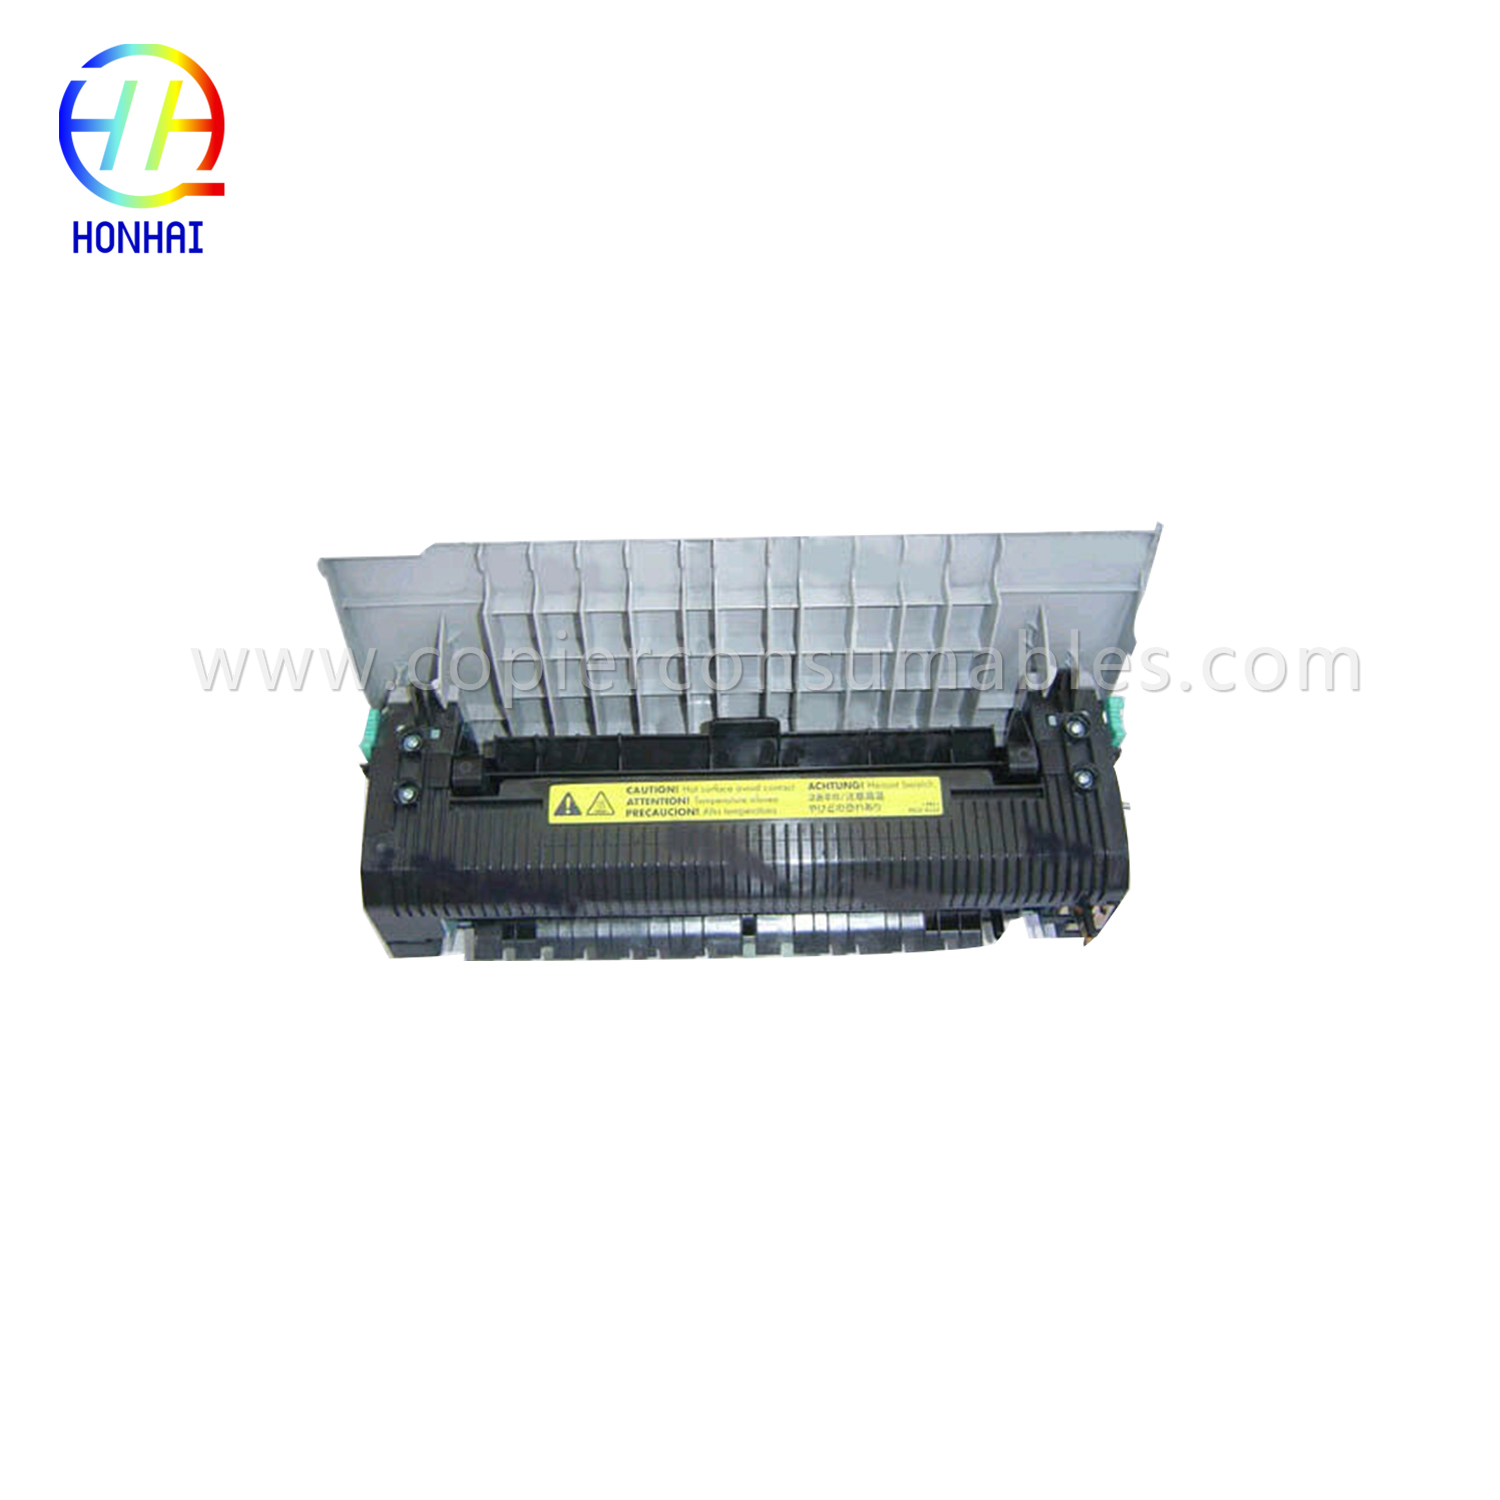 Unitate de cuptor pentru HP Color LaserJet 2550 2550L 2550ln 2550n (RG5-7572-110Cn)